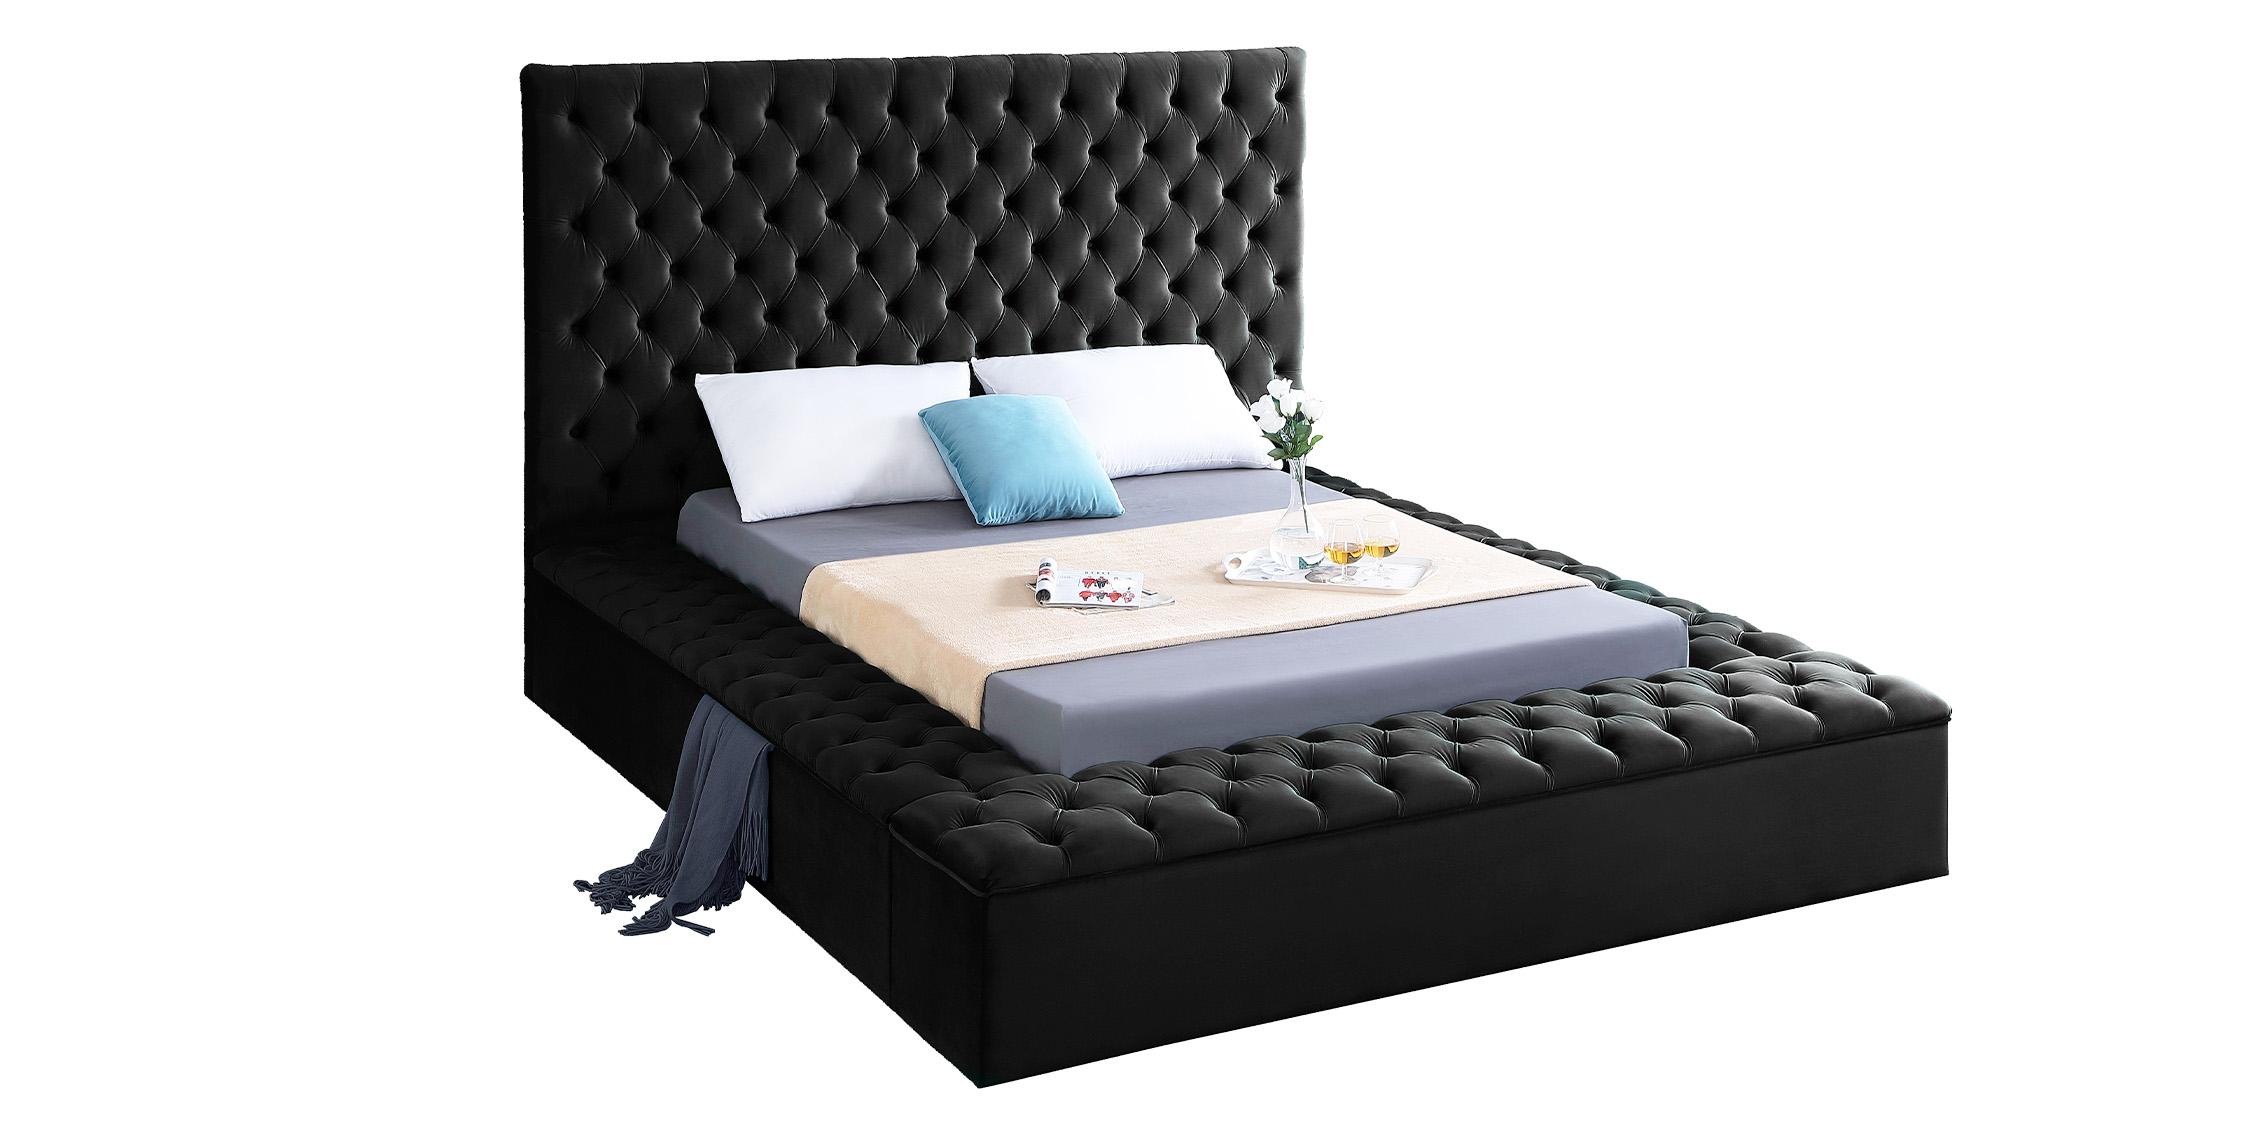 

    
Black Velvet Tufted Storage King Bed BLISS Meridian Contemporary Modern
